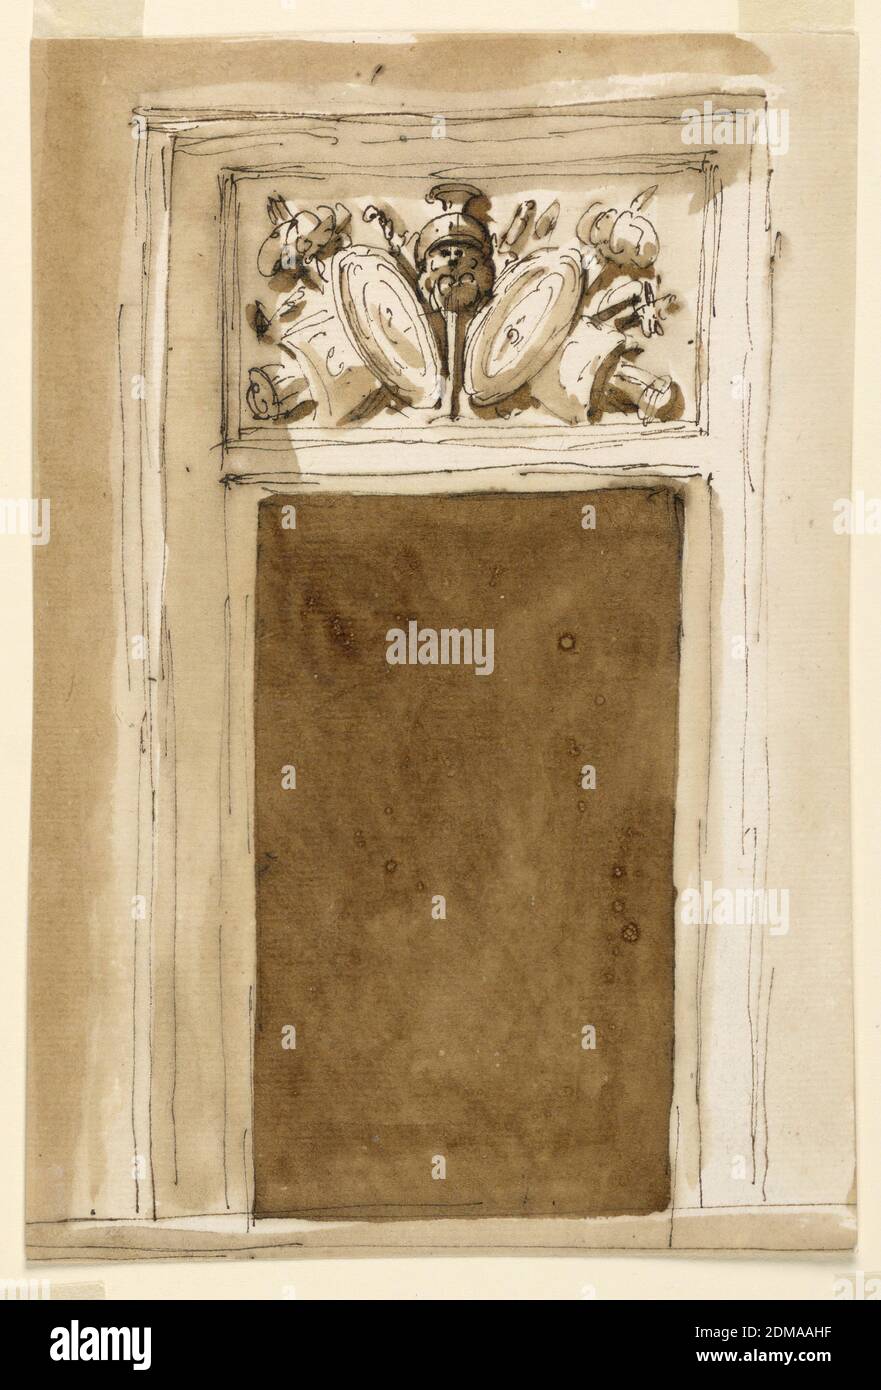 Design pour une porte, Giuseppe Barberi, italien, 1746–1809, stylo et encre brune, pinceau et lavage brun sur papier blanc cassé, doublé, la porte est encadrée de façon claire. La porte est un panneau avec la représentation d'un trophée d'armes. La porte se compose d'un cadre incurvé moulé. Contexte habituel., Rome, Italie, 1746–1809, architecture, dessin Banque D'Images